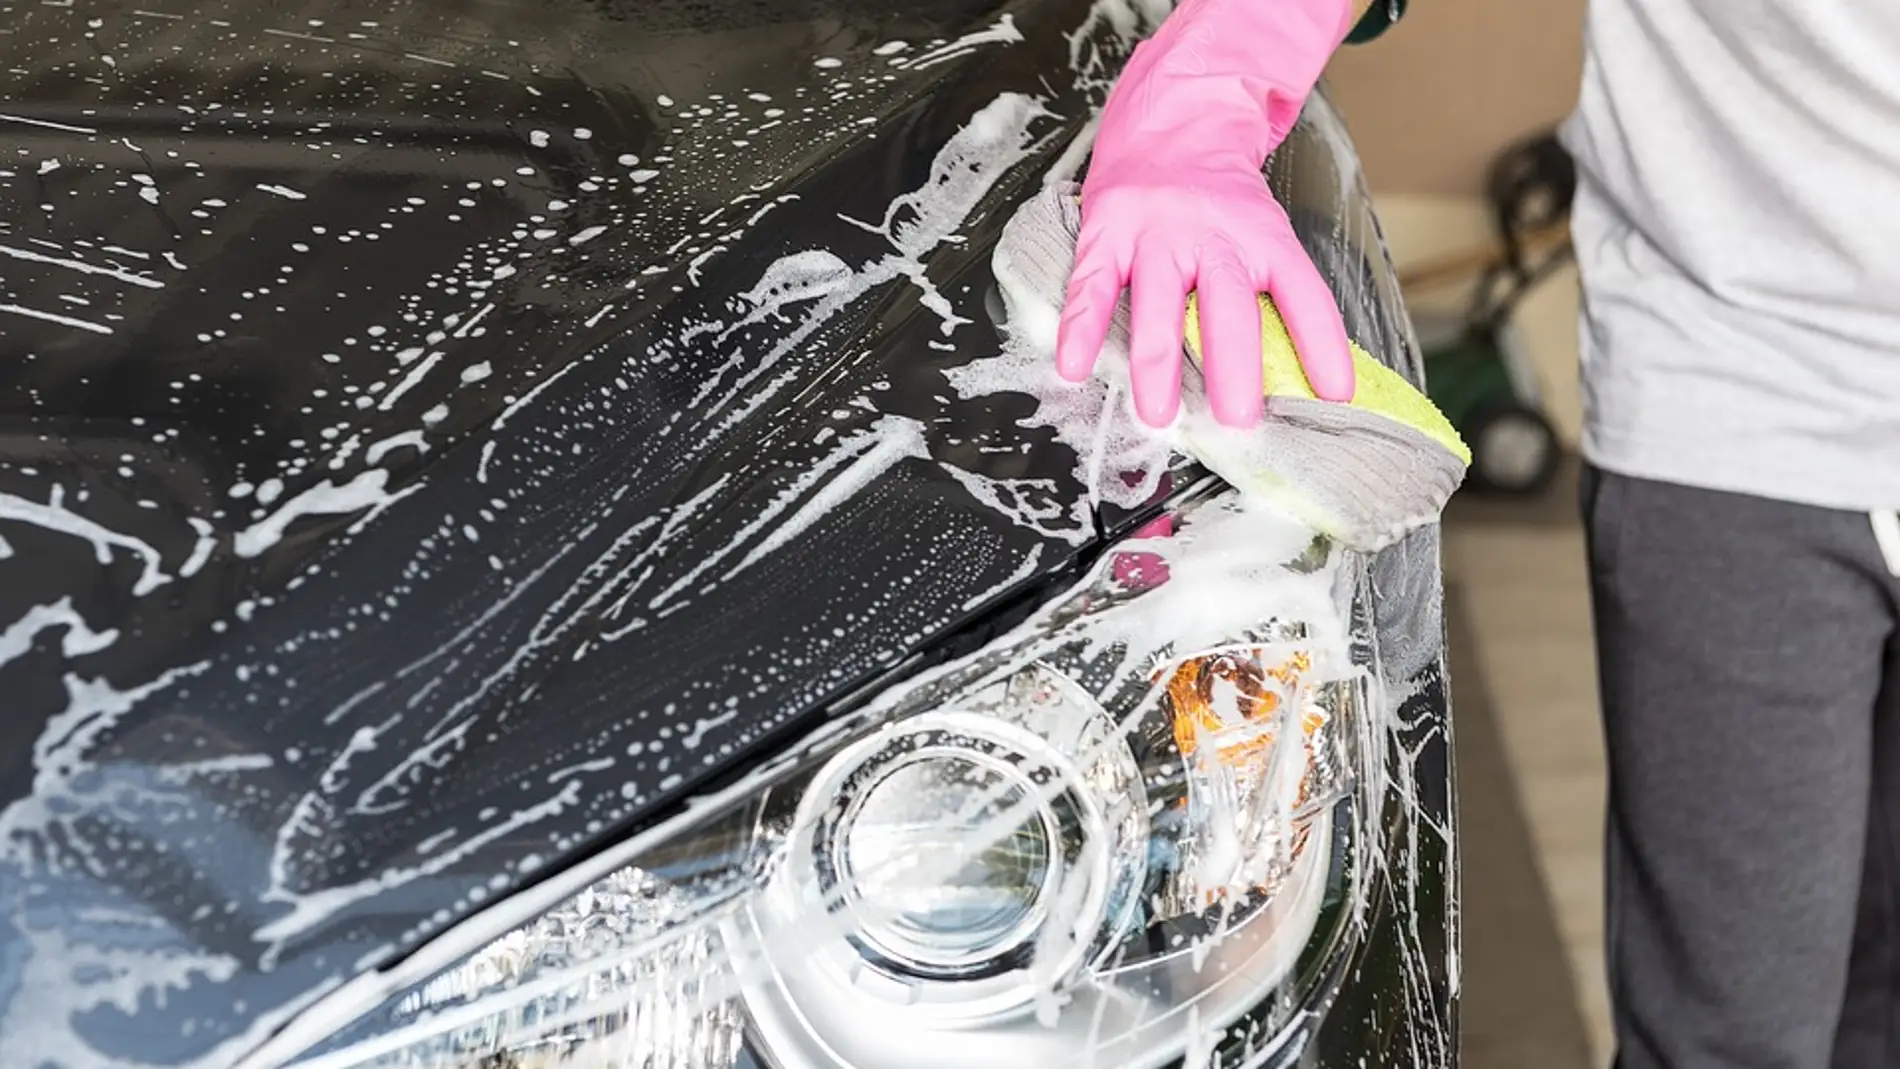 COVID-19: limpiar el coche con jabón neutro y no lejía, entre las  recomendaciones